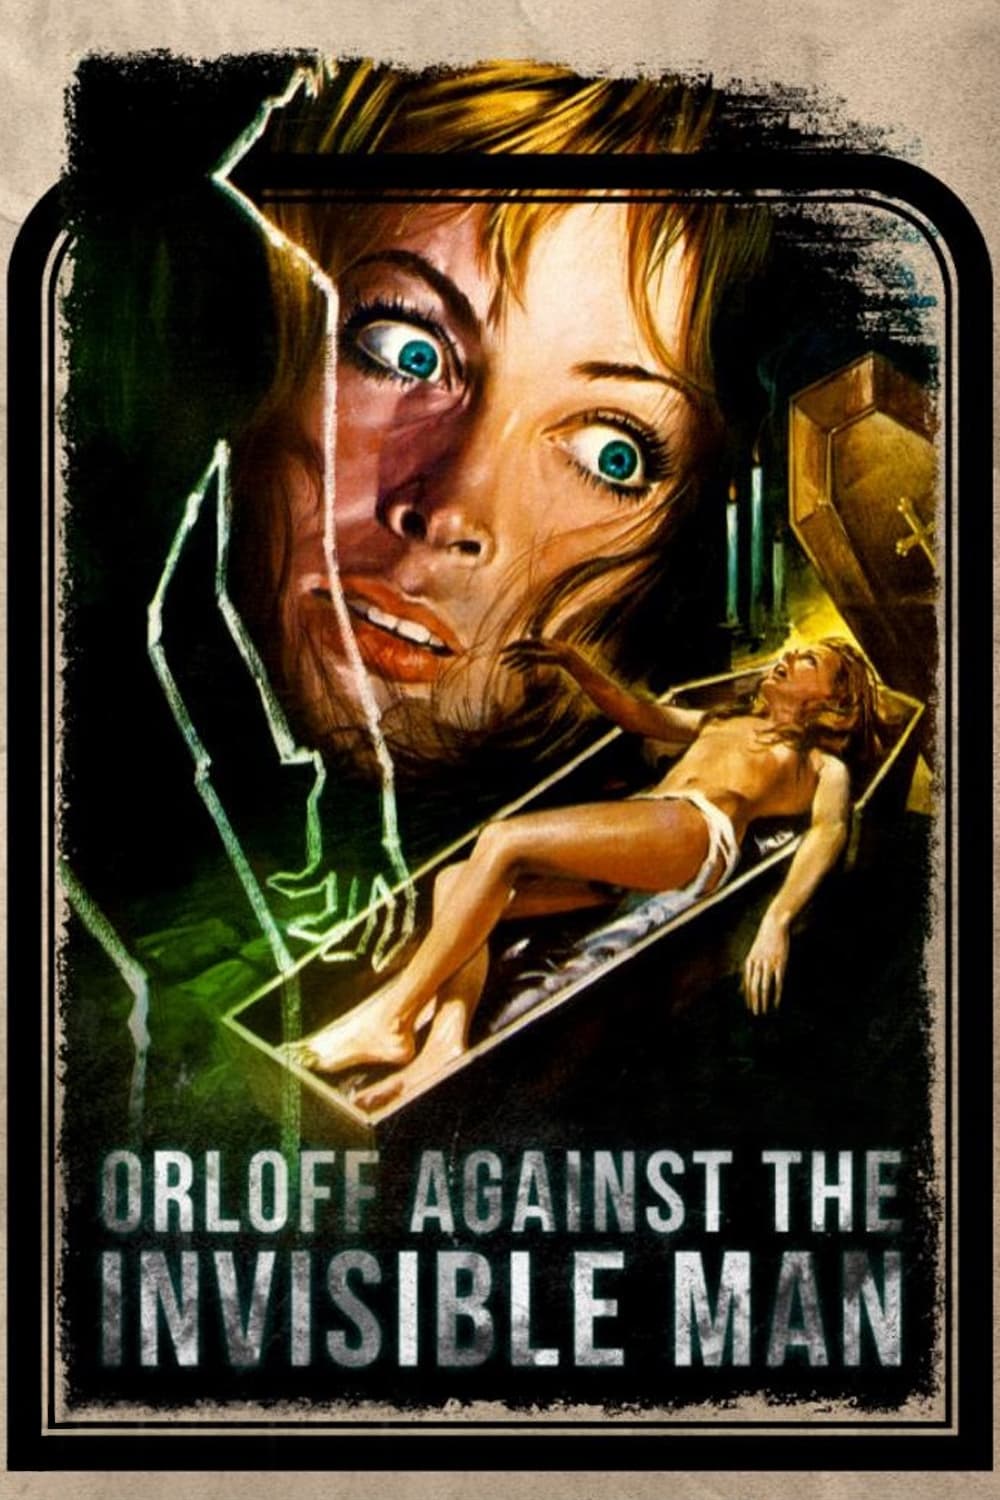 Orloff et l'homme invisible (1970)